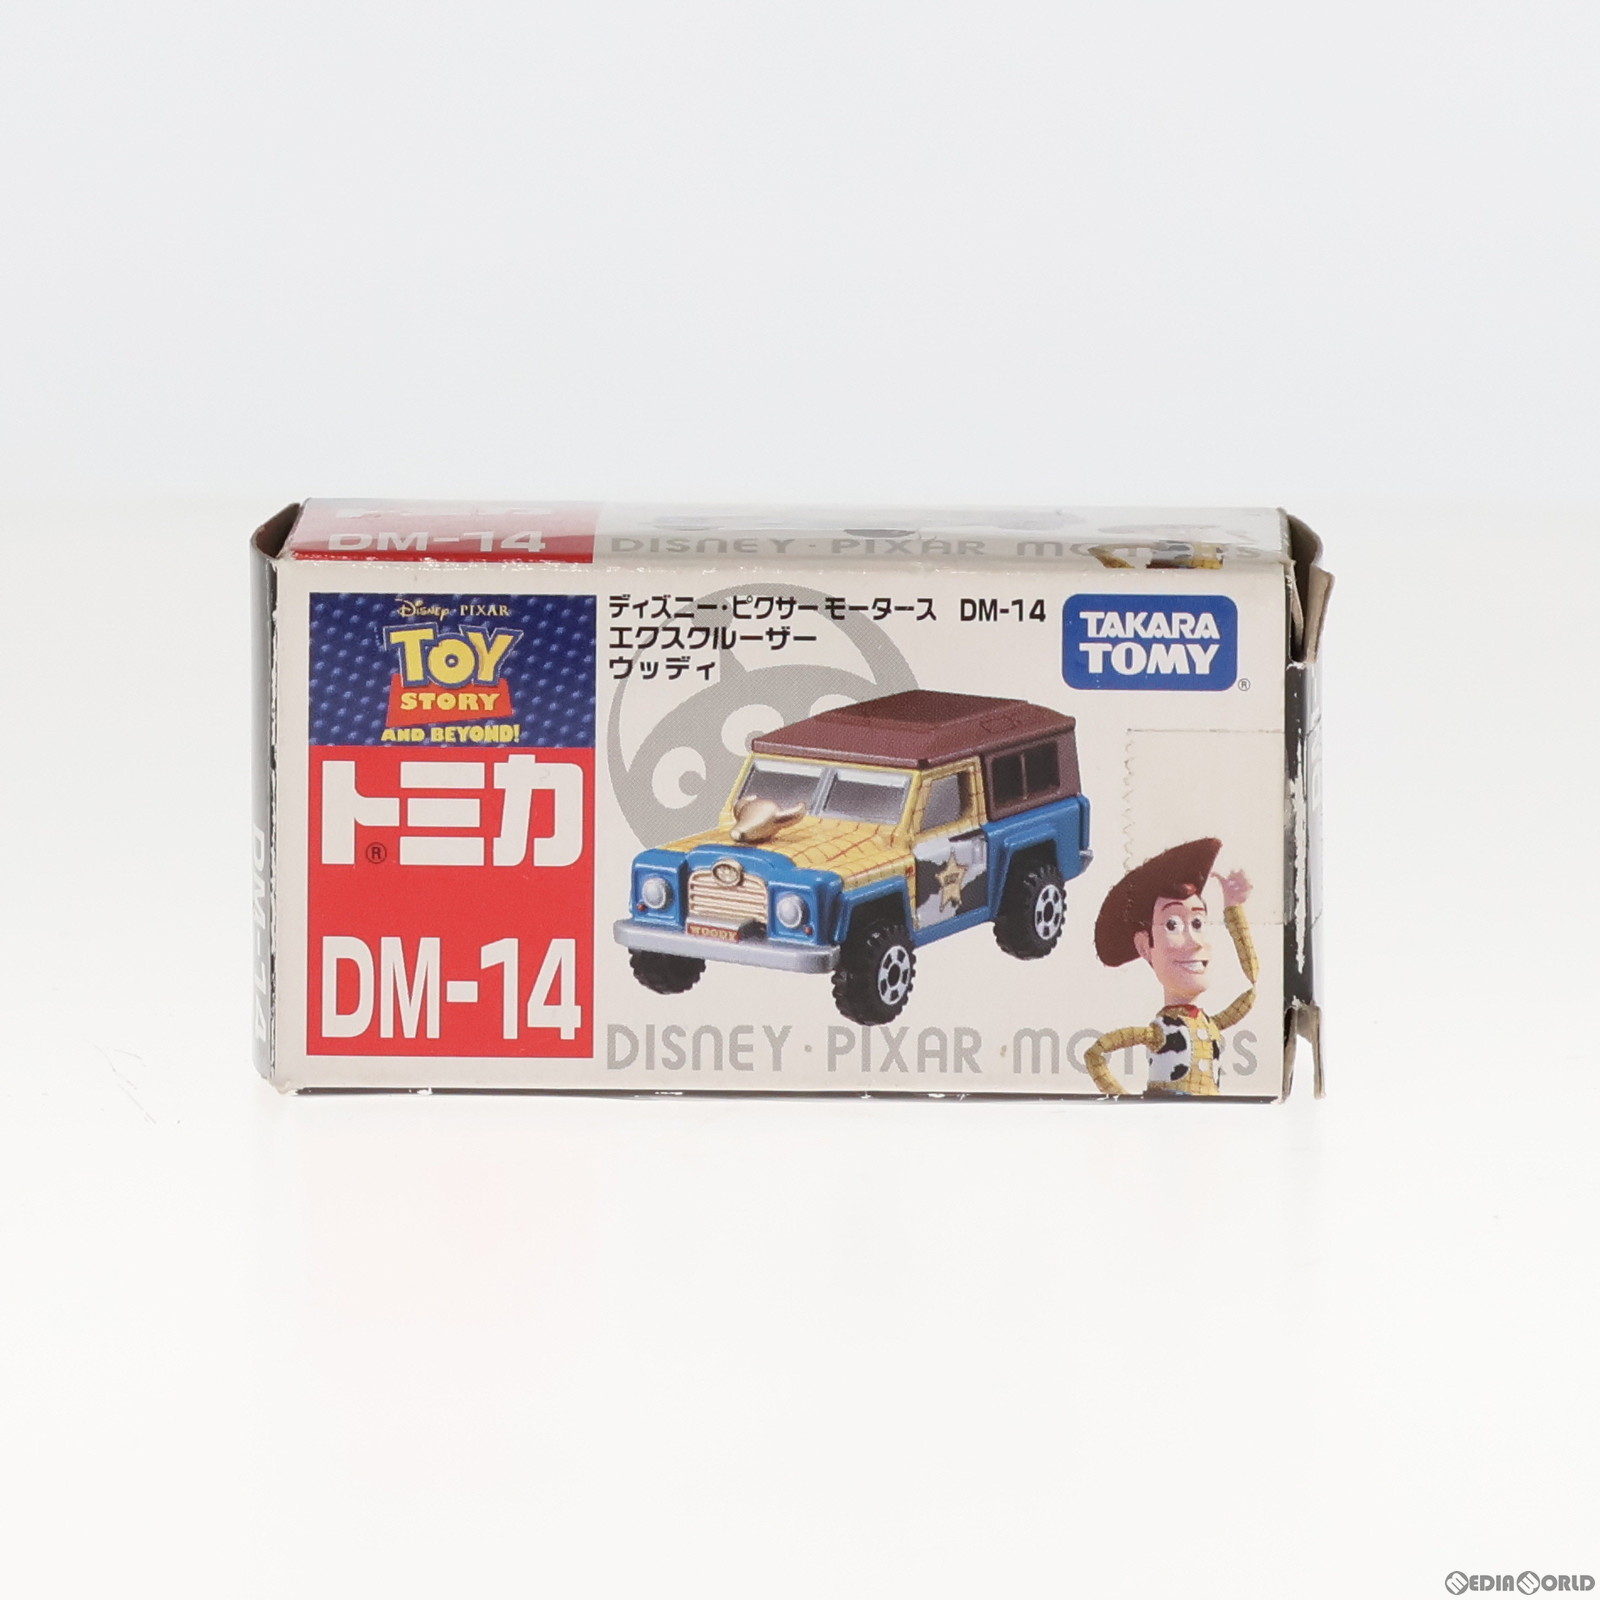 【中古即納】[MDL]トミカ ディズニー・ピクサーモータース DM-14 エクスクルーザー ウッディ(ブラウン×イエロー×ブルー) 完成品 ミニカ